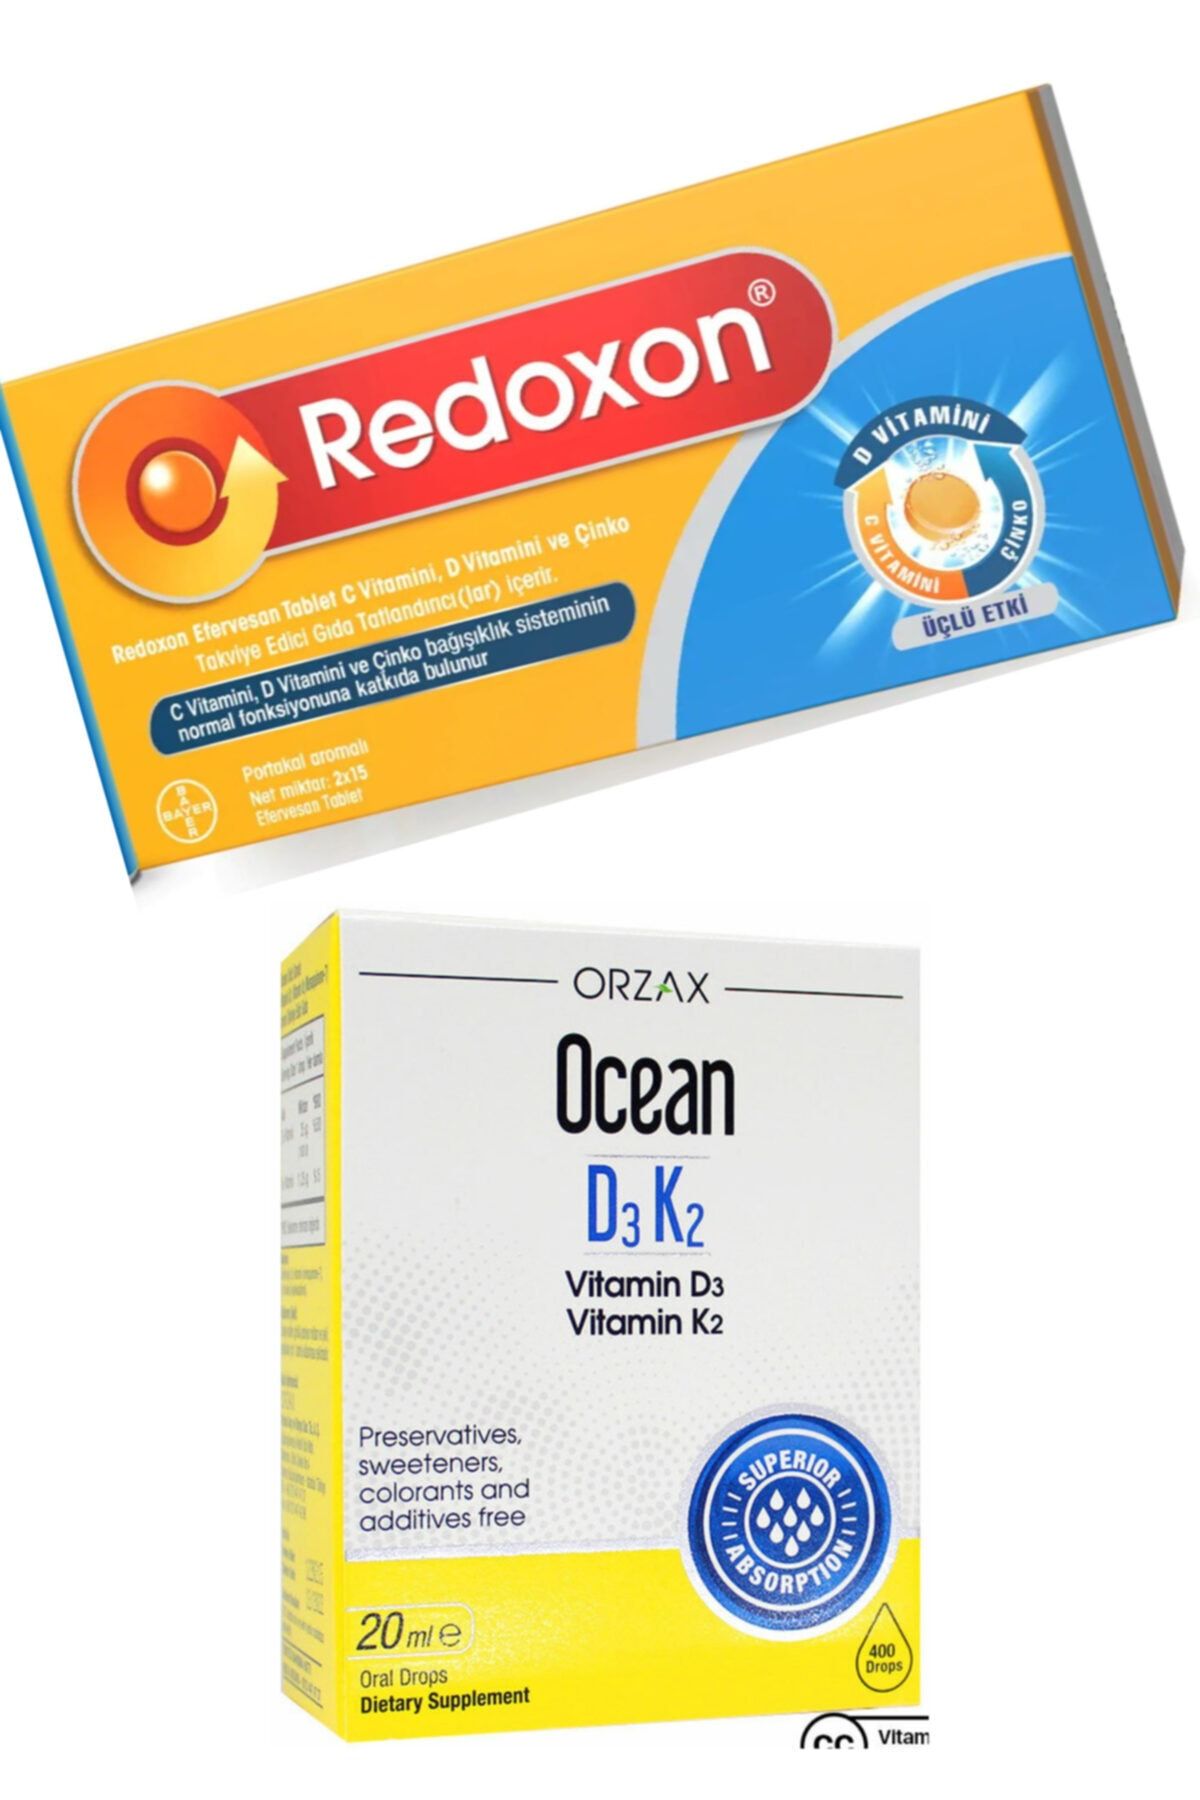 Redoxon 3lü Etki C Vitamini D Vitamini Çinko Efervesan 30 Tablet Ve Ocean D3k2 Damla 20 Ml